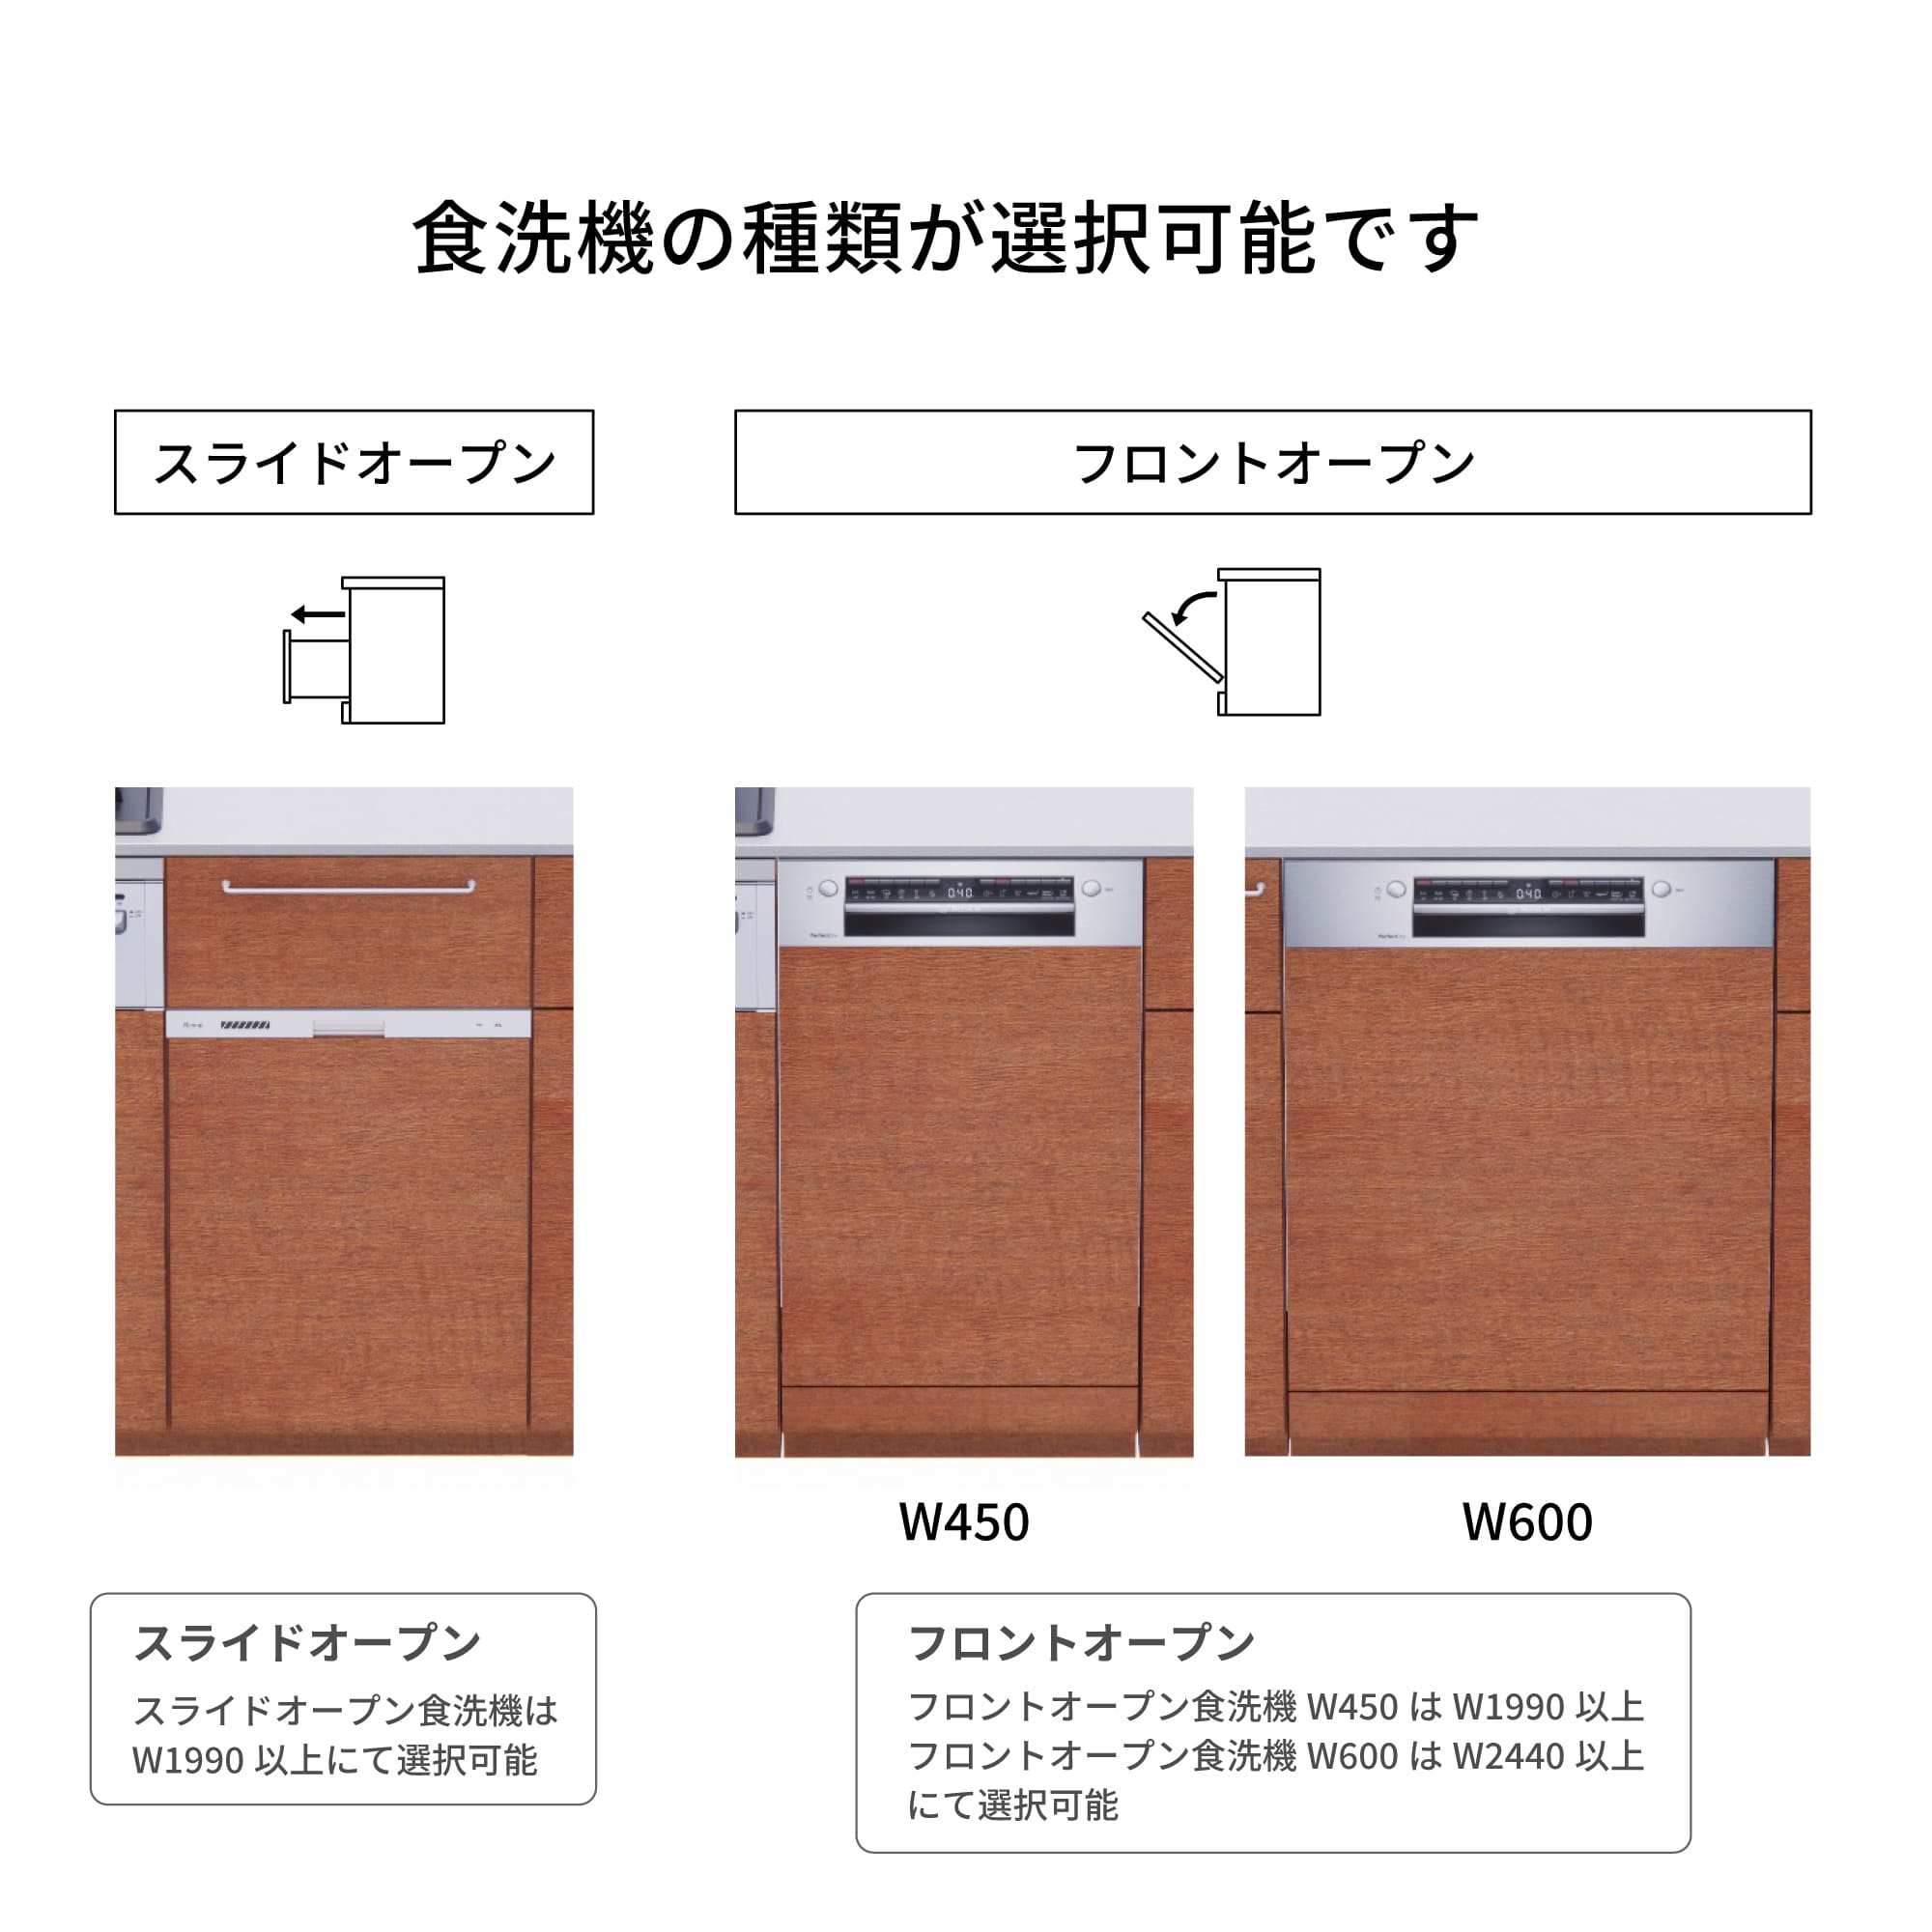 木製システムキッチン 壁付け型 W2440～2740・コンロあり / オーブンなし / 食洗機あり KB-KC022-26-G183 食洗機が選択できます